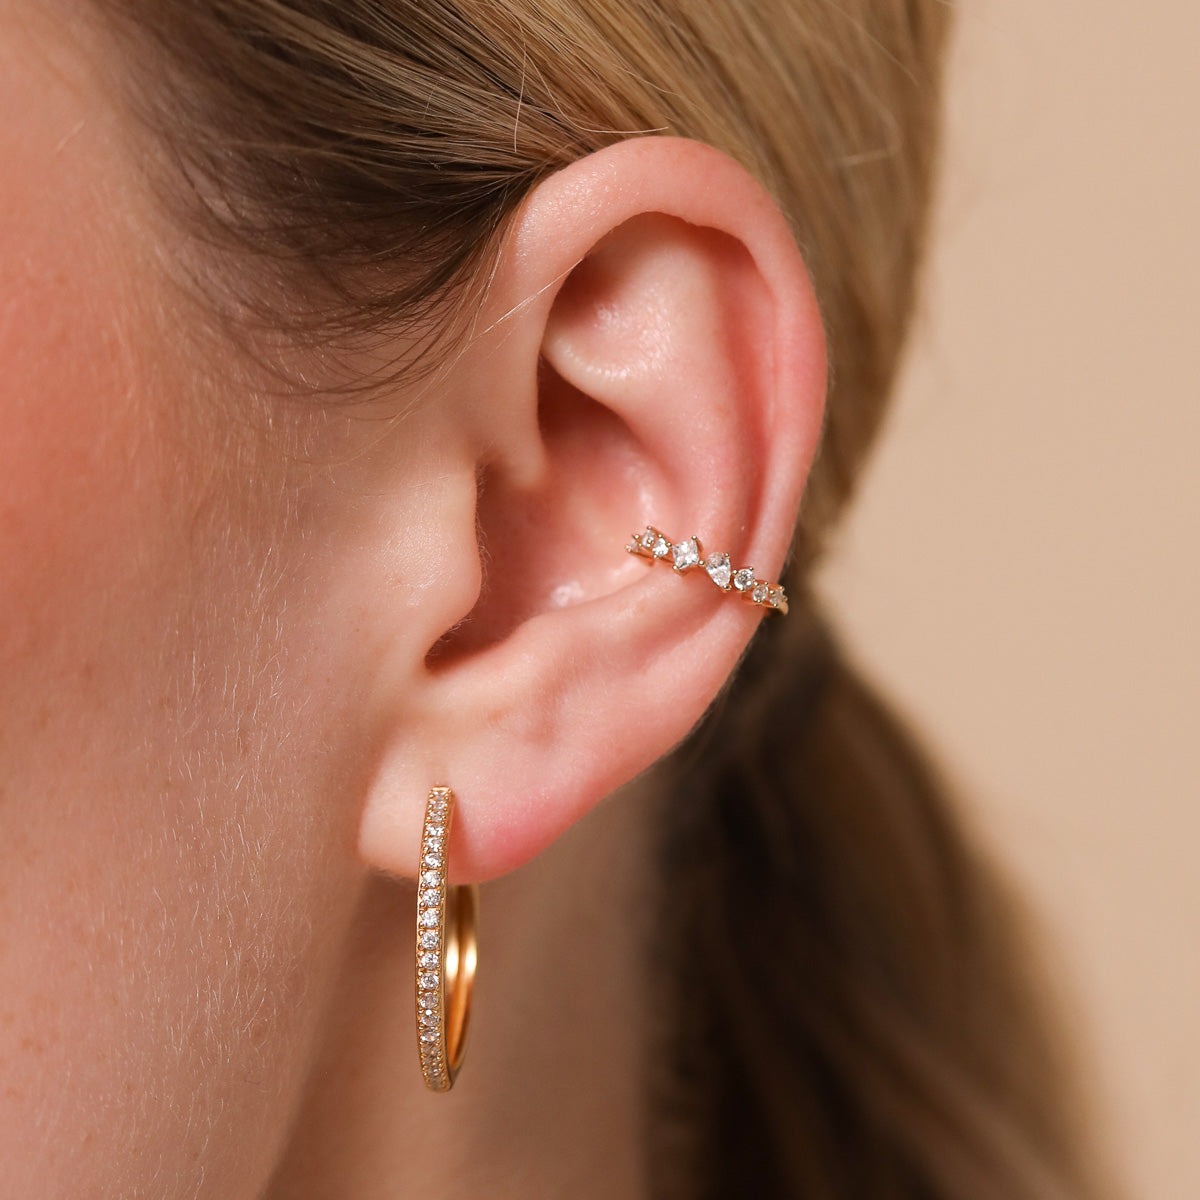 Celestial Crystal Ear Cuff in Gold worn